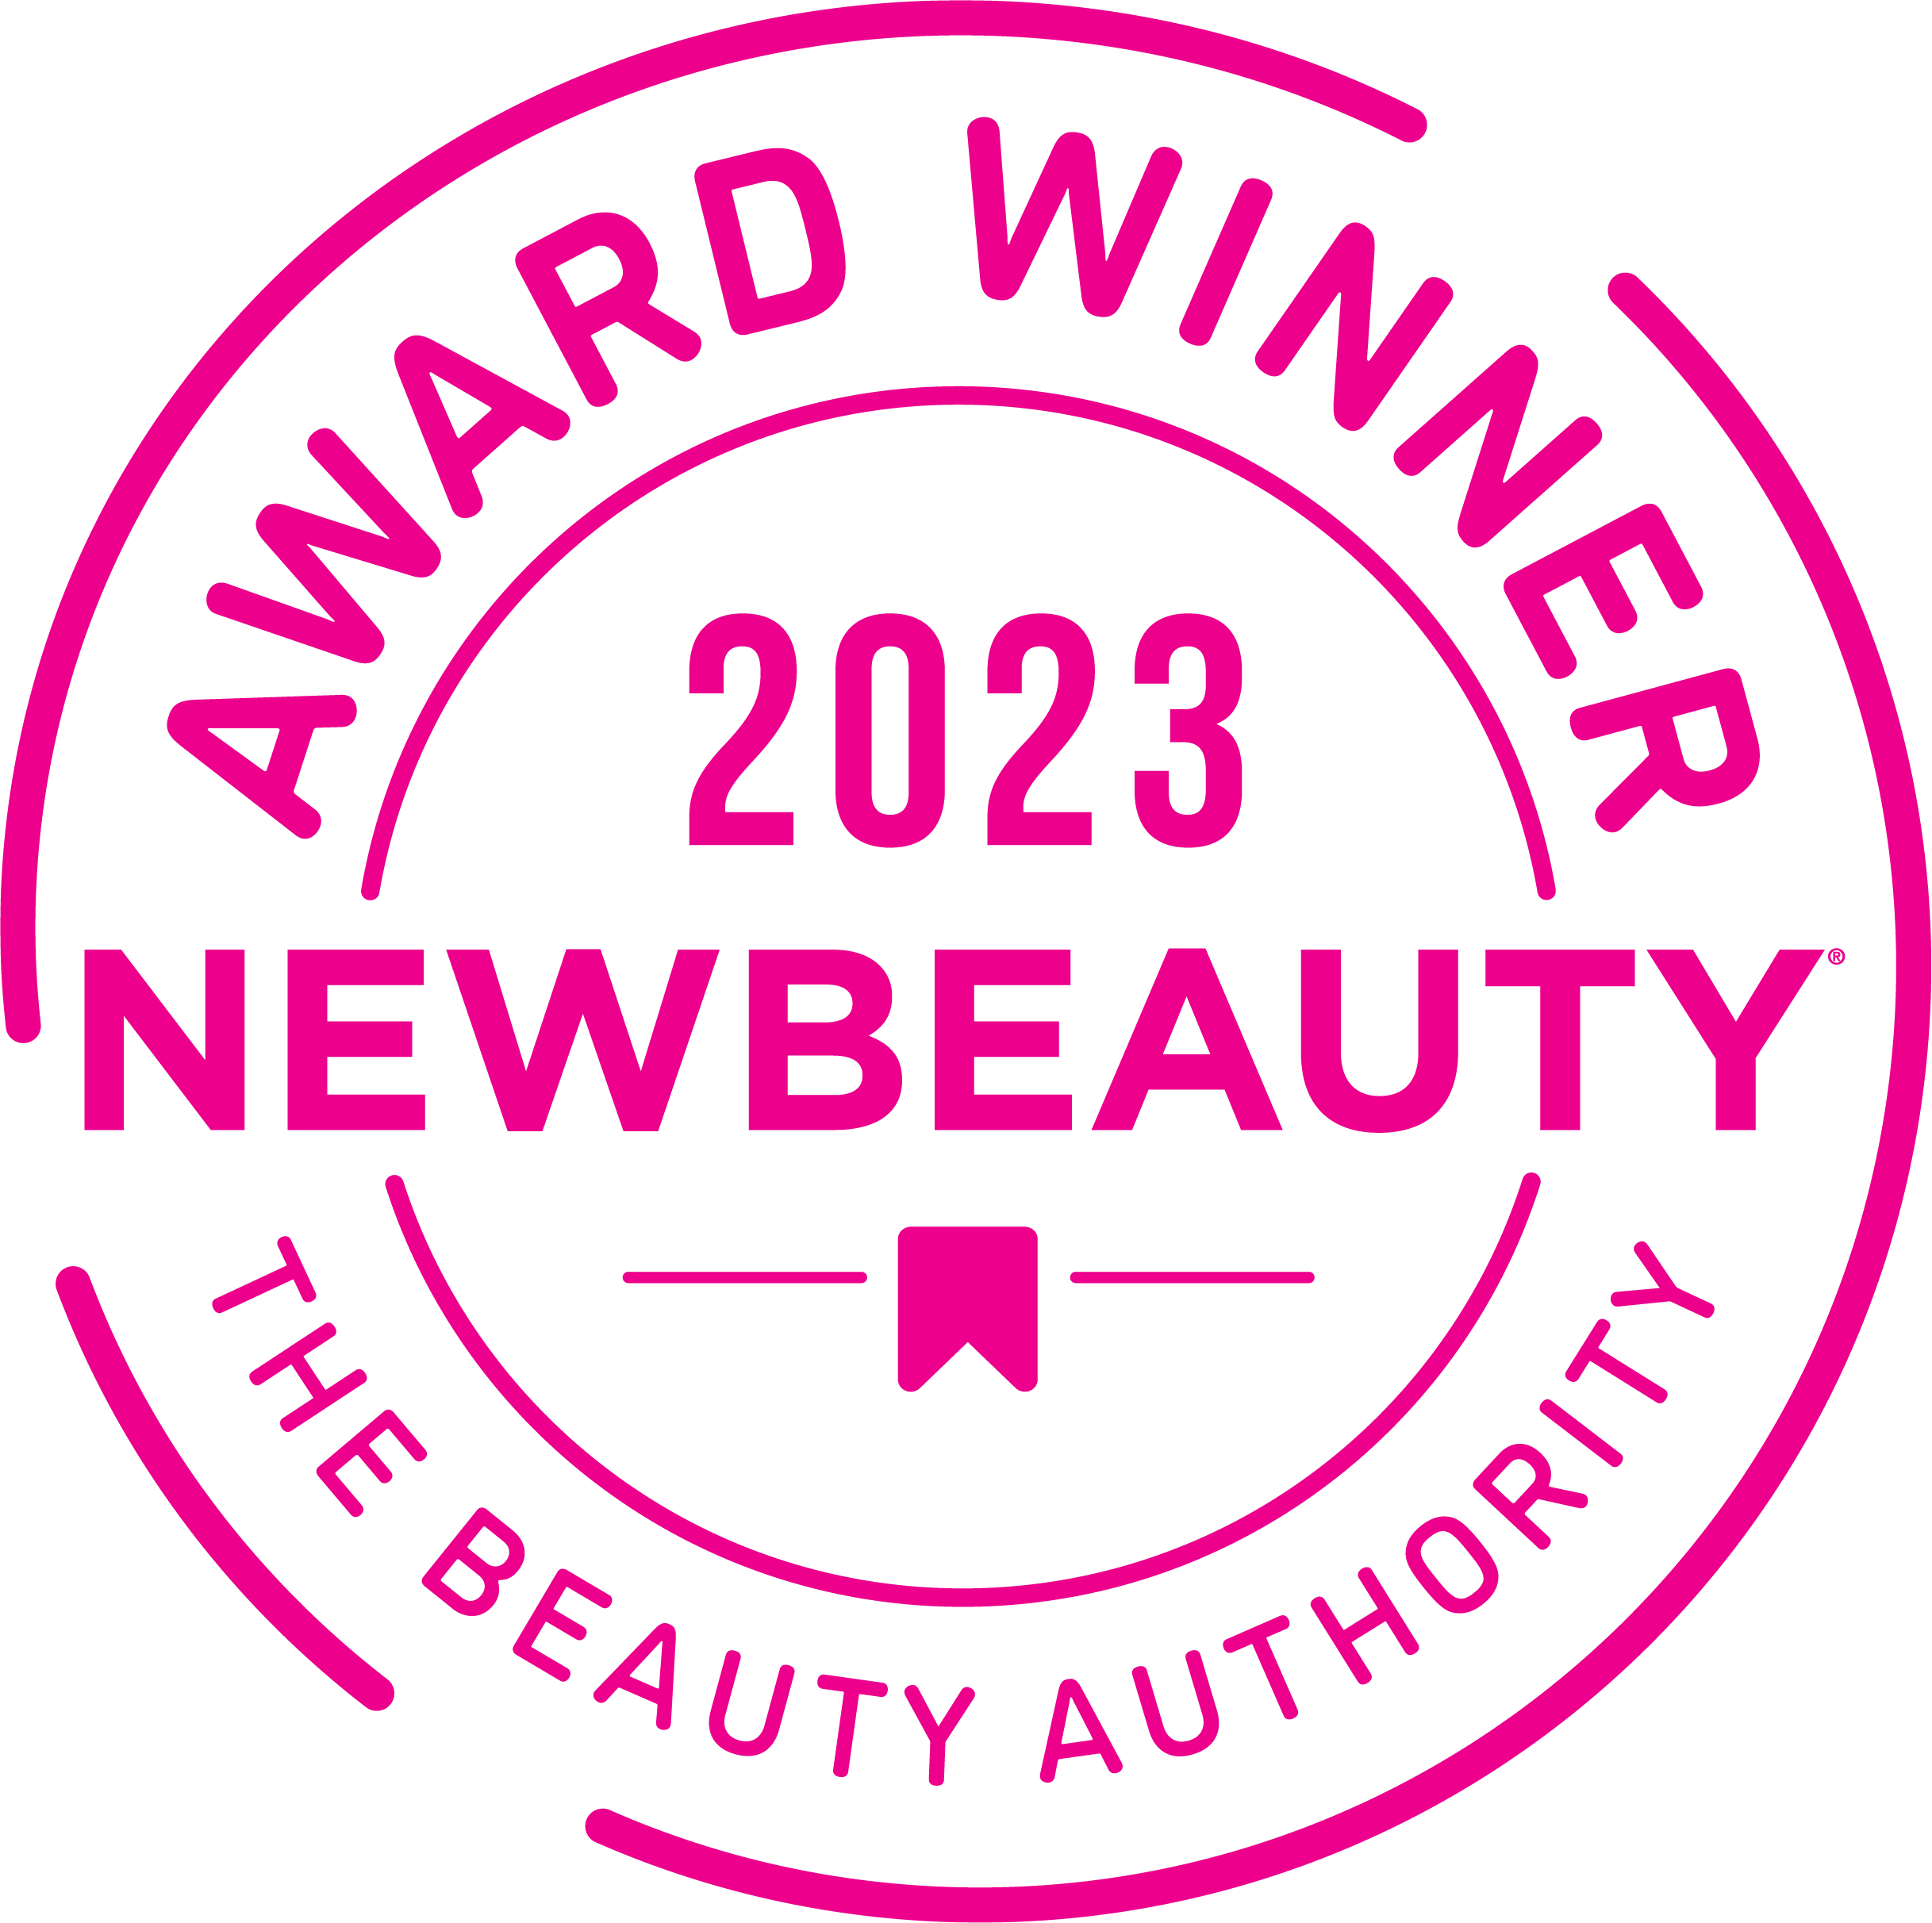 New Beauty 2023 Award